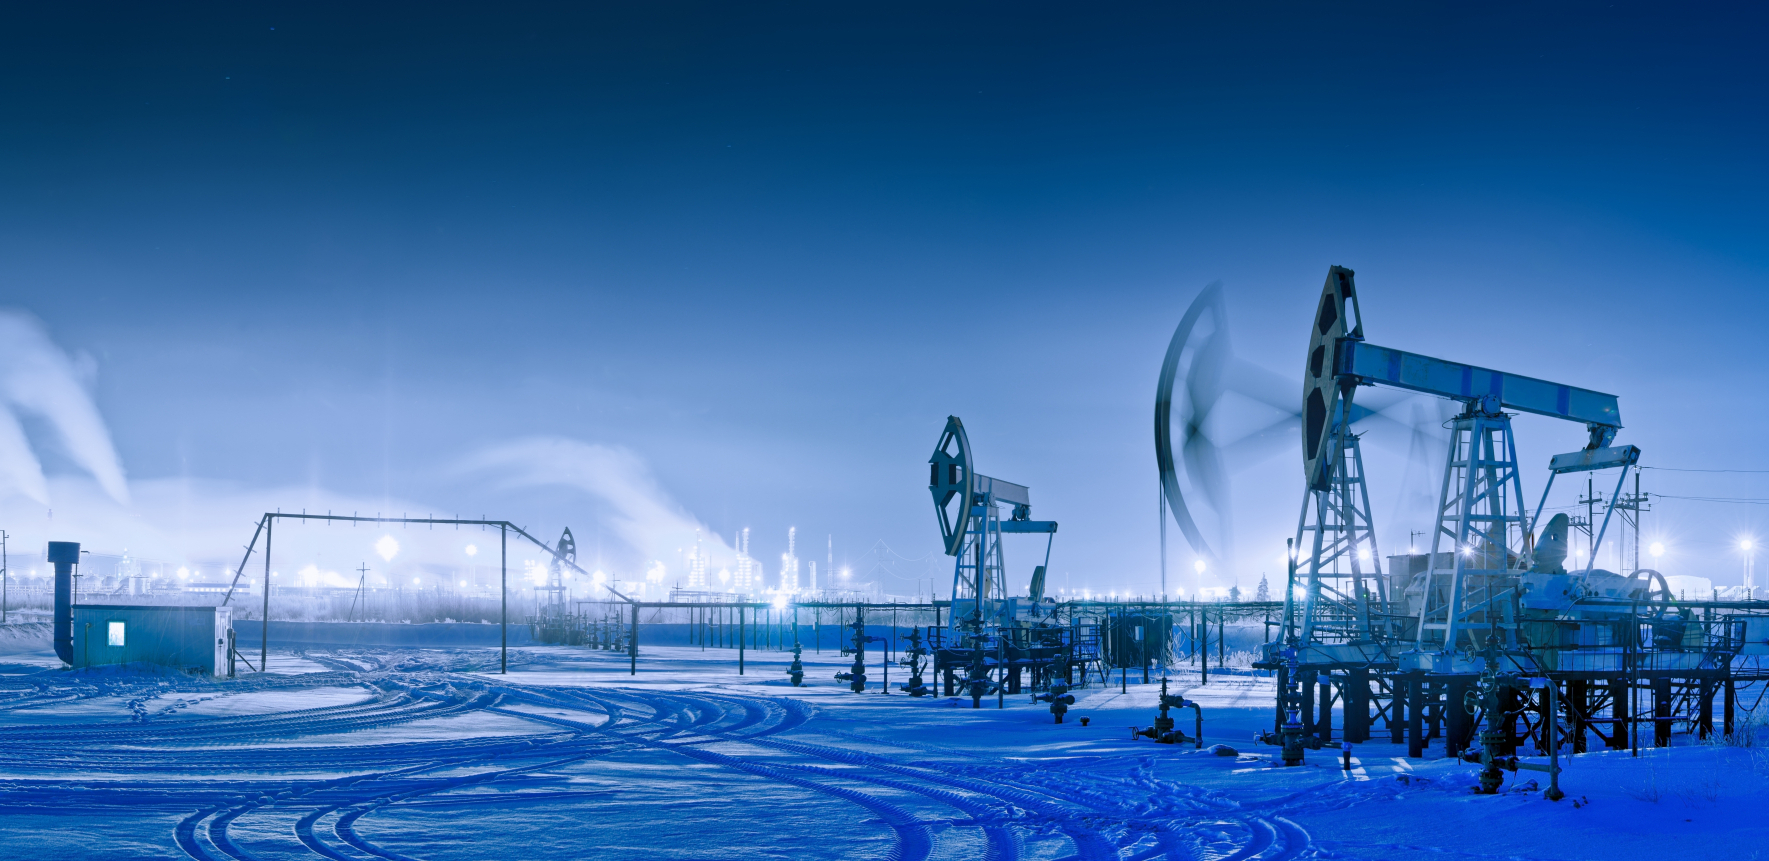 IGOR SEČIN: Ograničenje cena nafte podriva fundamente tržišta i ukida suverenitet države